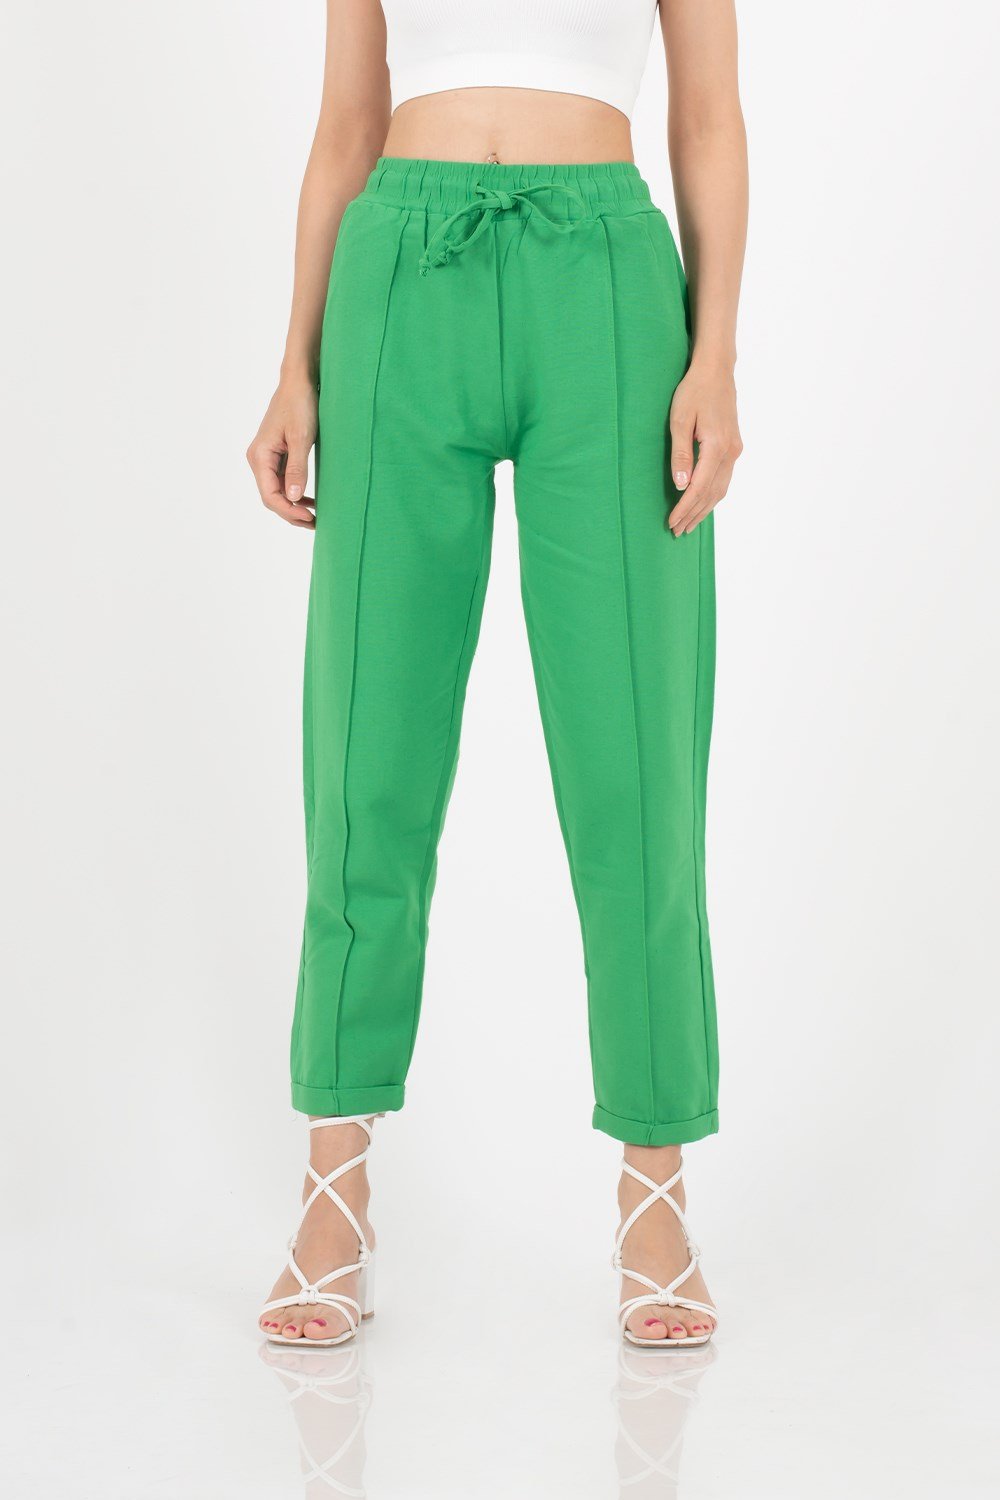 Kadın Yeşil Keten Pantolon | Pranga Giyim